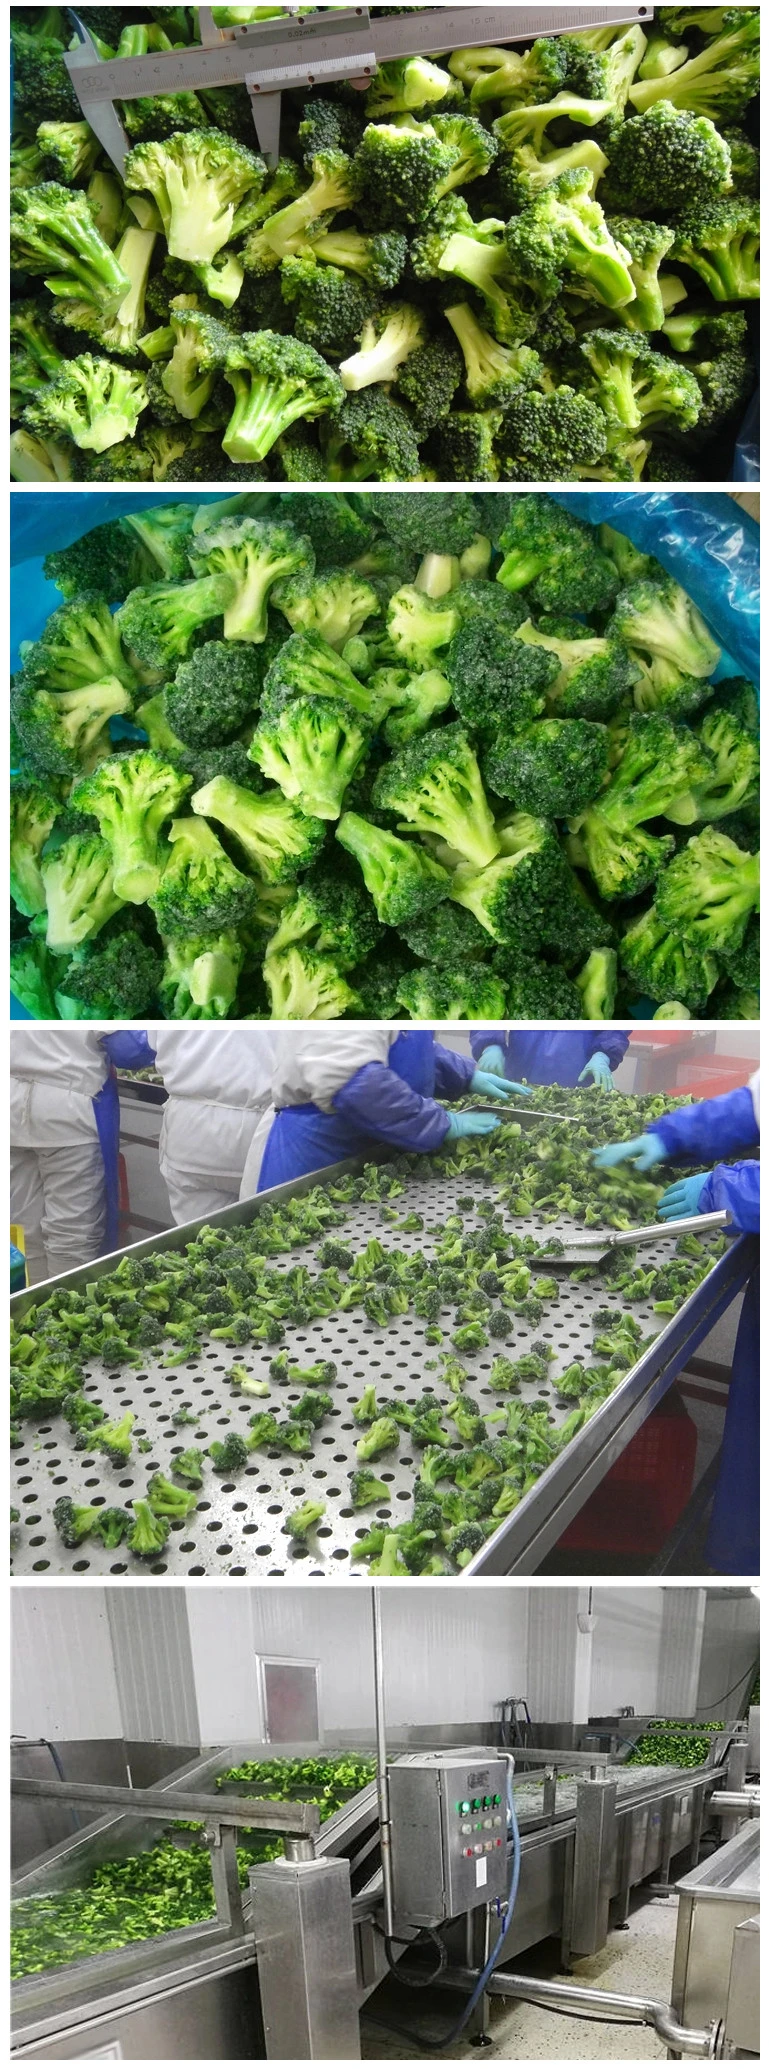 Frozen Vegetable, Frozen Broccoli